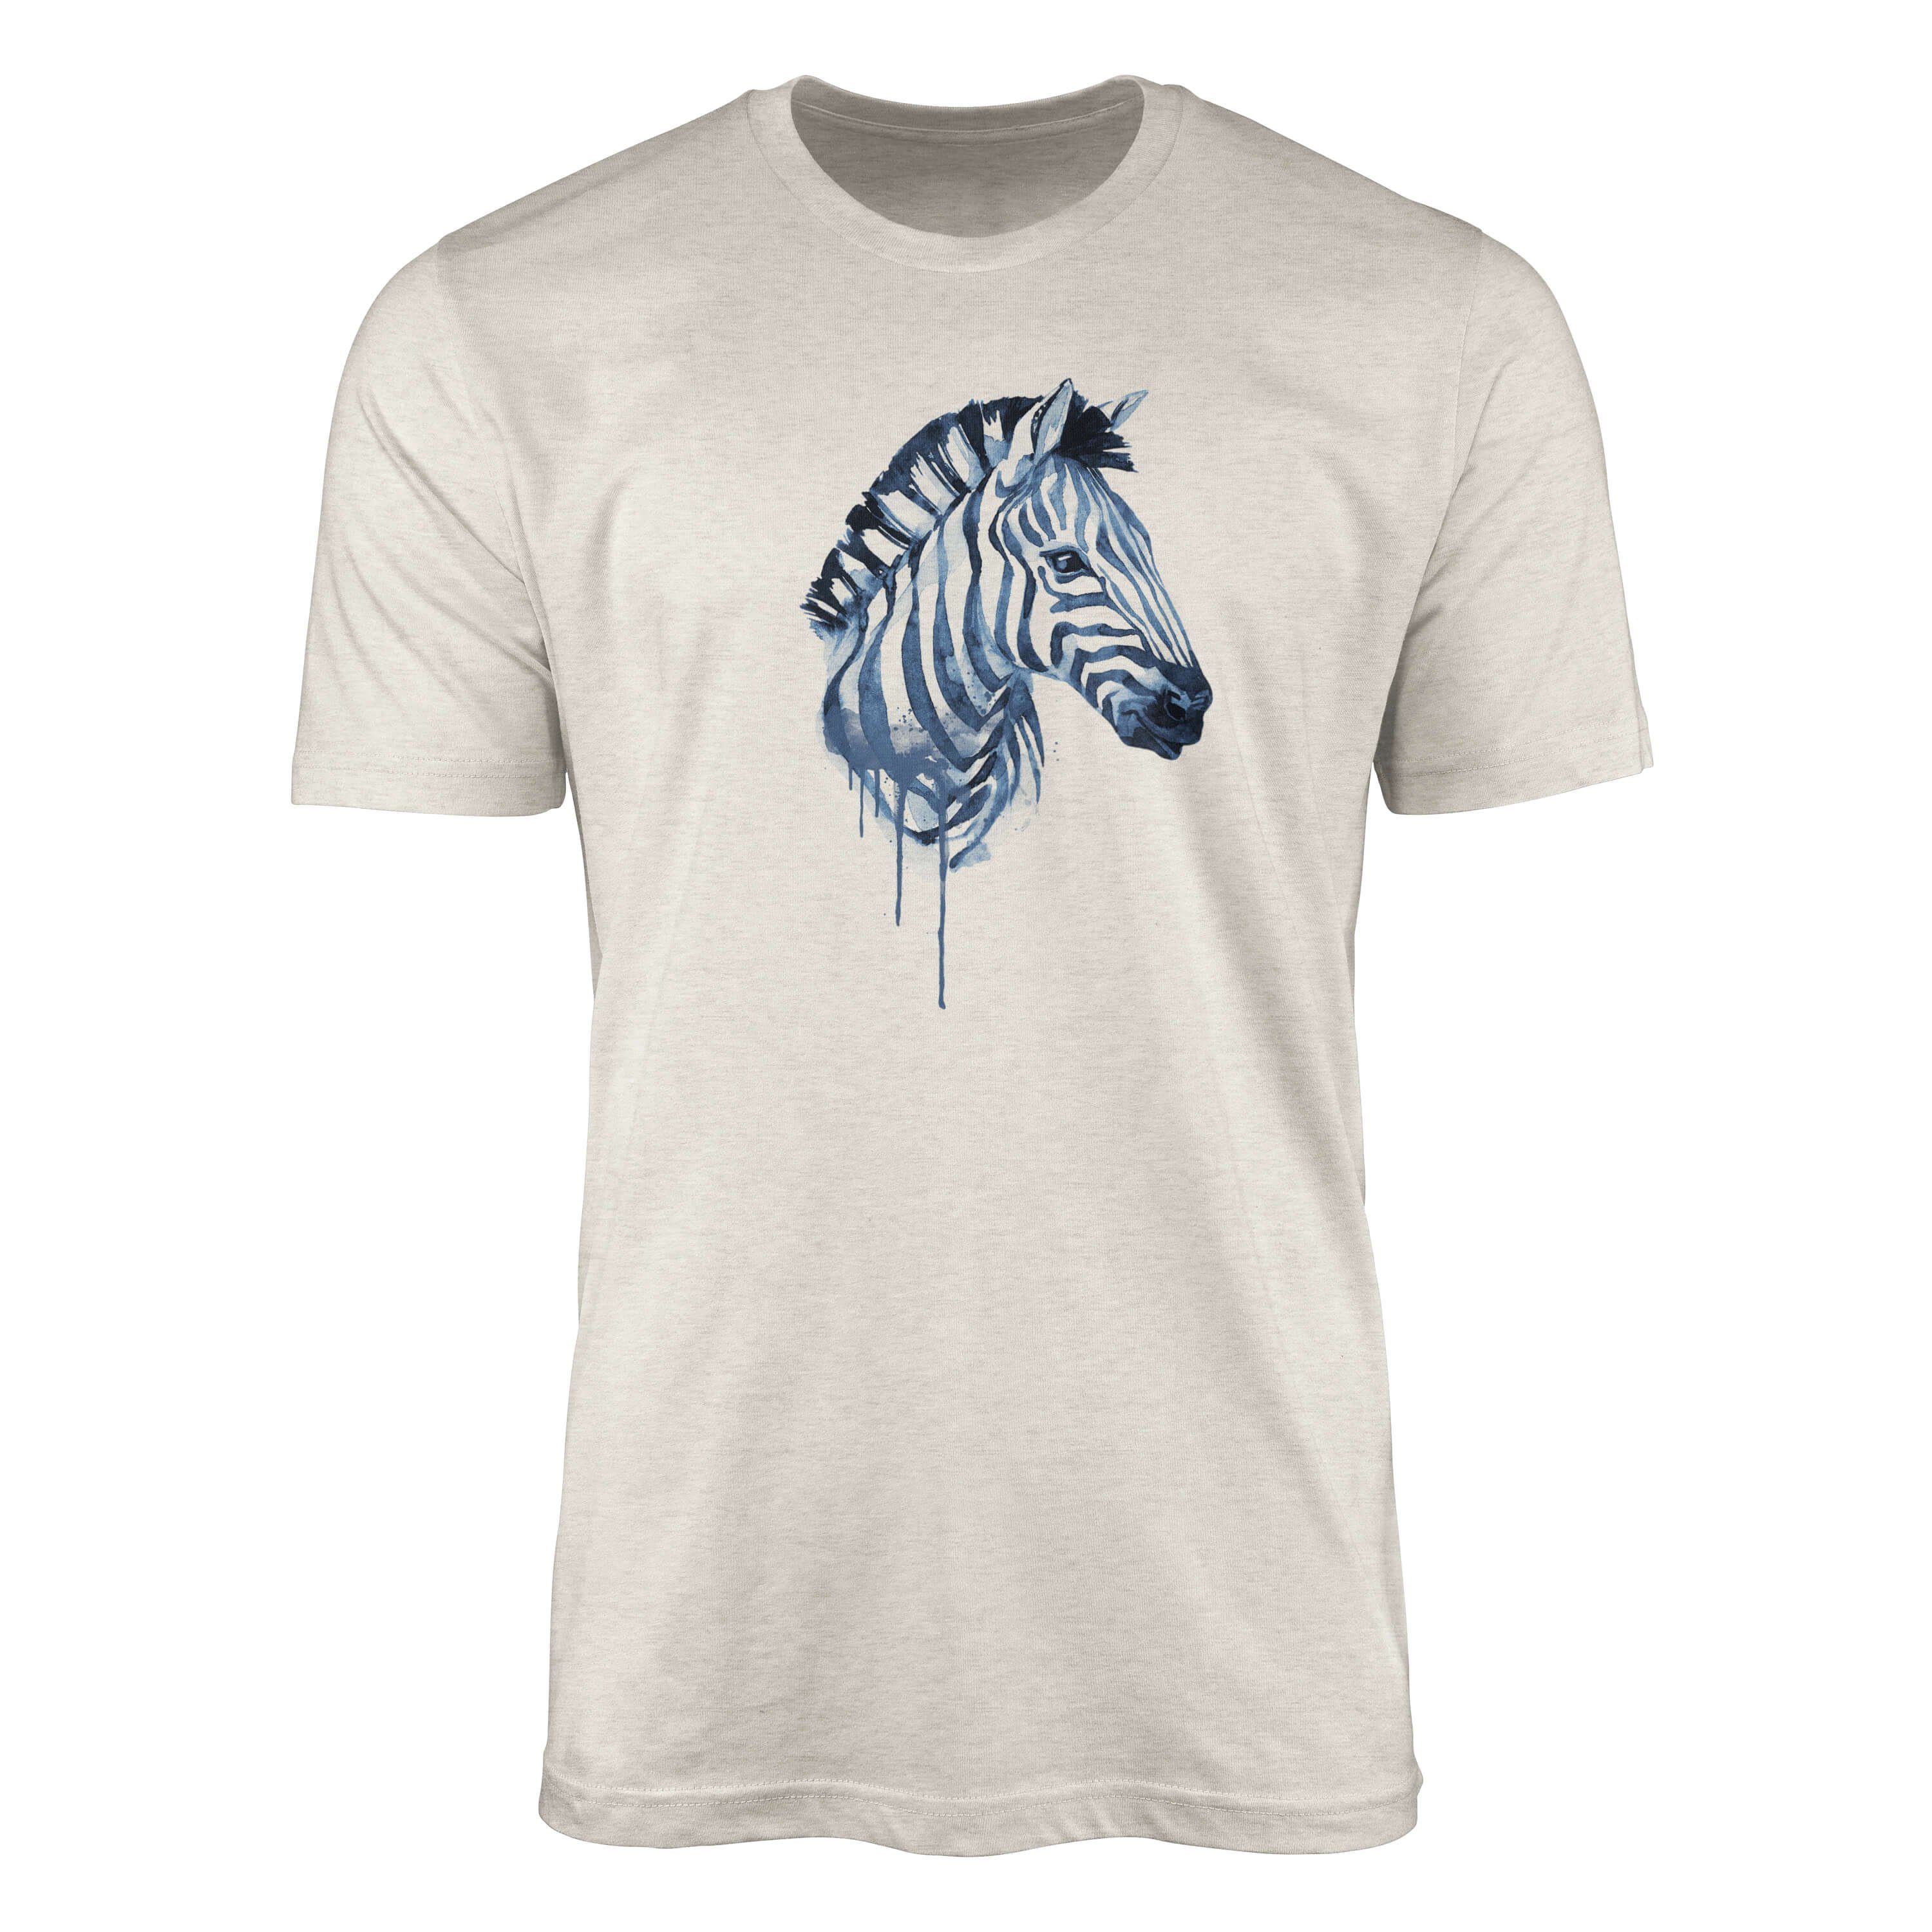 Nachhaltig Herren Bio-Baumwolle Art erneue Sinus T-Shirt Shirt Aquarell (1-tlg) Ökomode T-Shirt Motiv Zebra gekämmte 100% aus